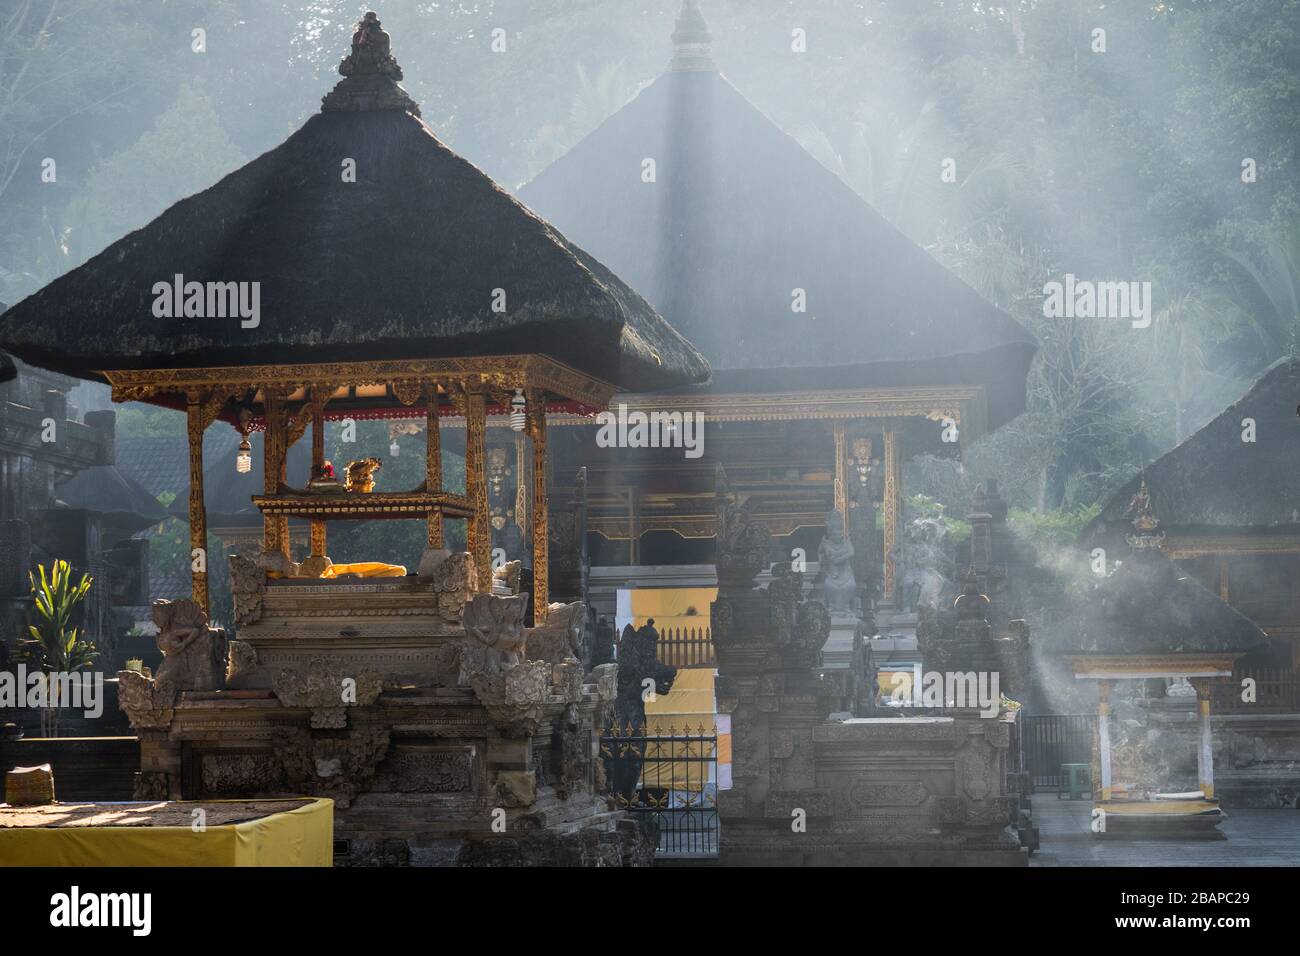 Die Sonne am frühen Morgen, die durch den Nebel strömt, der goldene Tempel in stimmungsvollem, schönem, trüben Licht im Pura Tirth Empul, balinesischem Wassertempel, einhüllt. Stockfoto